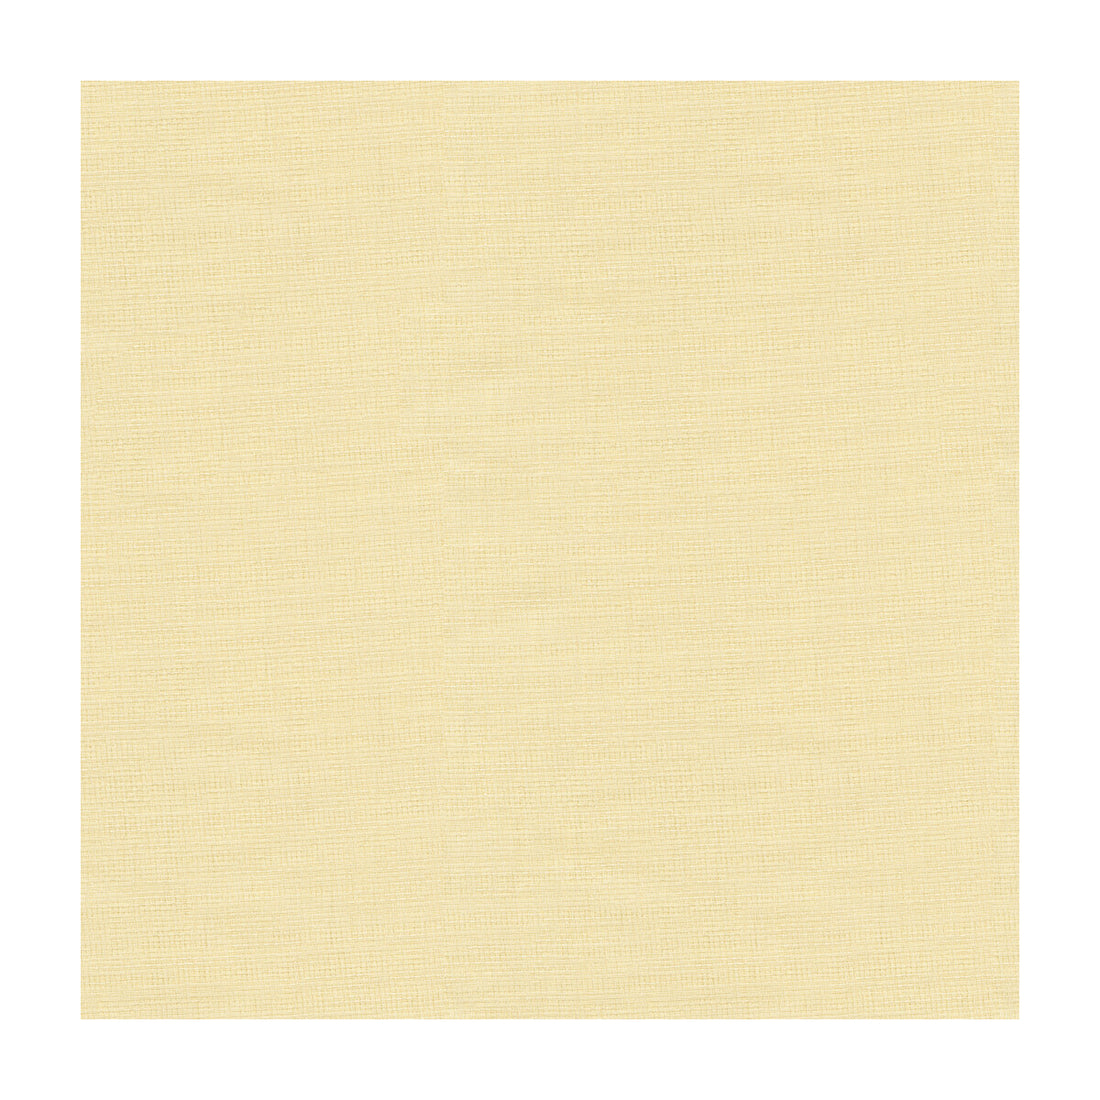 Kravet Basics fabric in 4125-1 color - pattern 4125.1.0 - by Kravet Basics